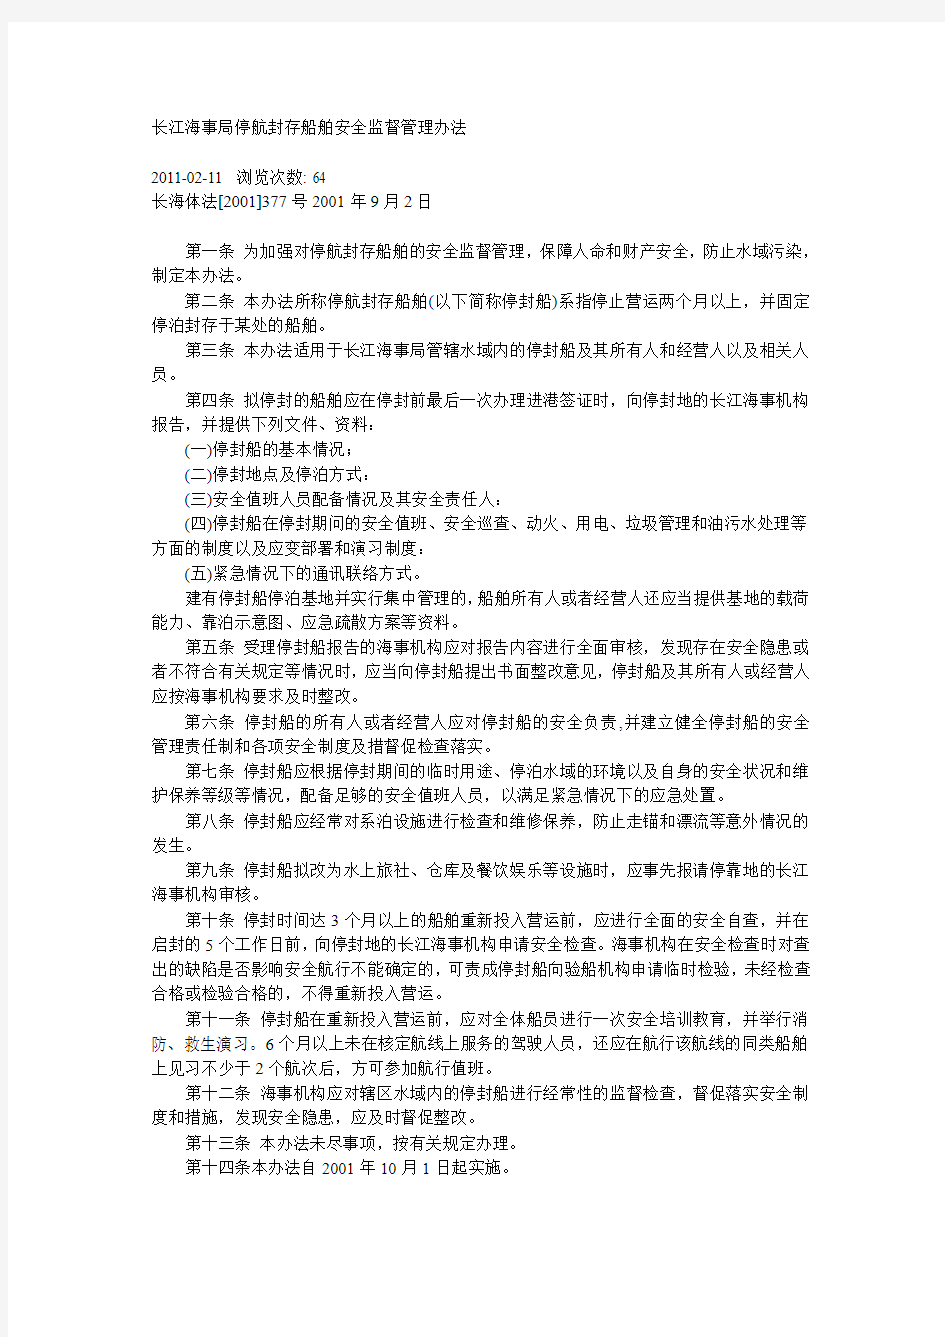 长江海事局停航封存船舶安全监督管理办法